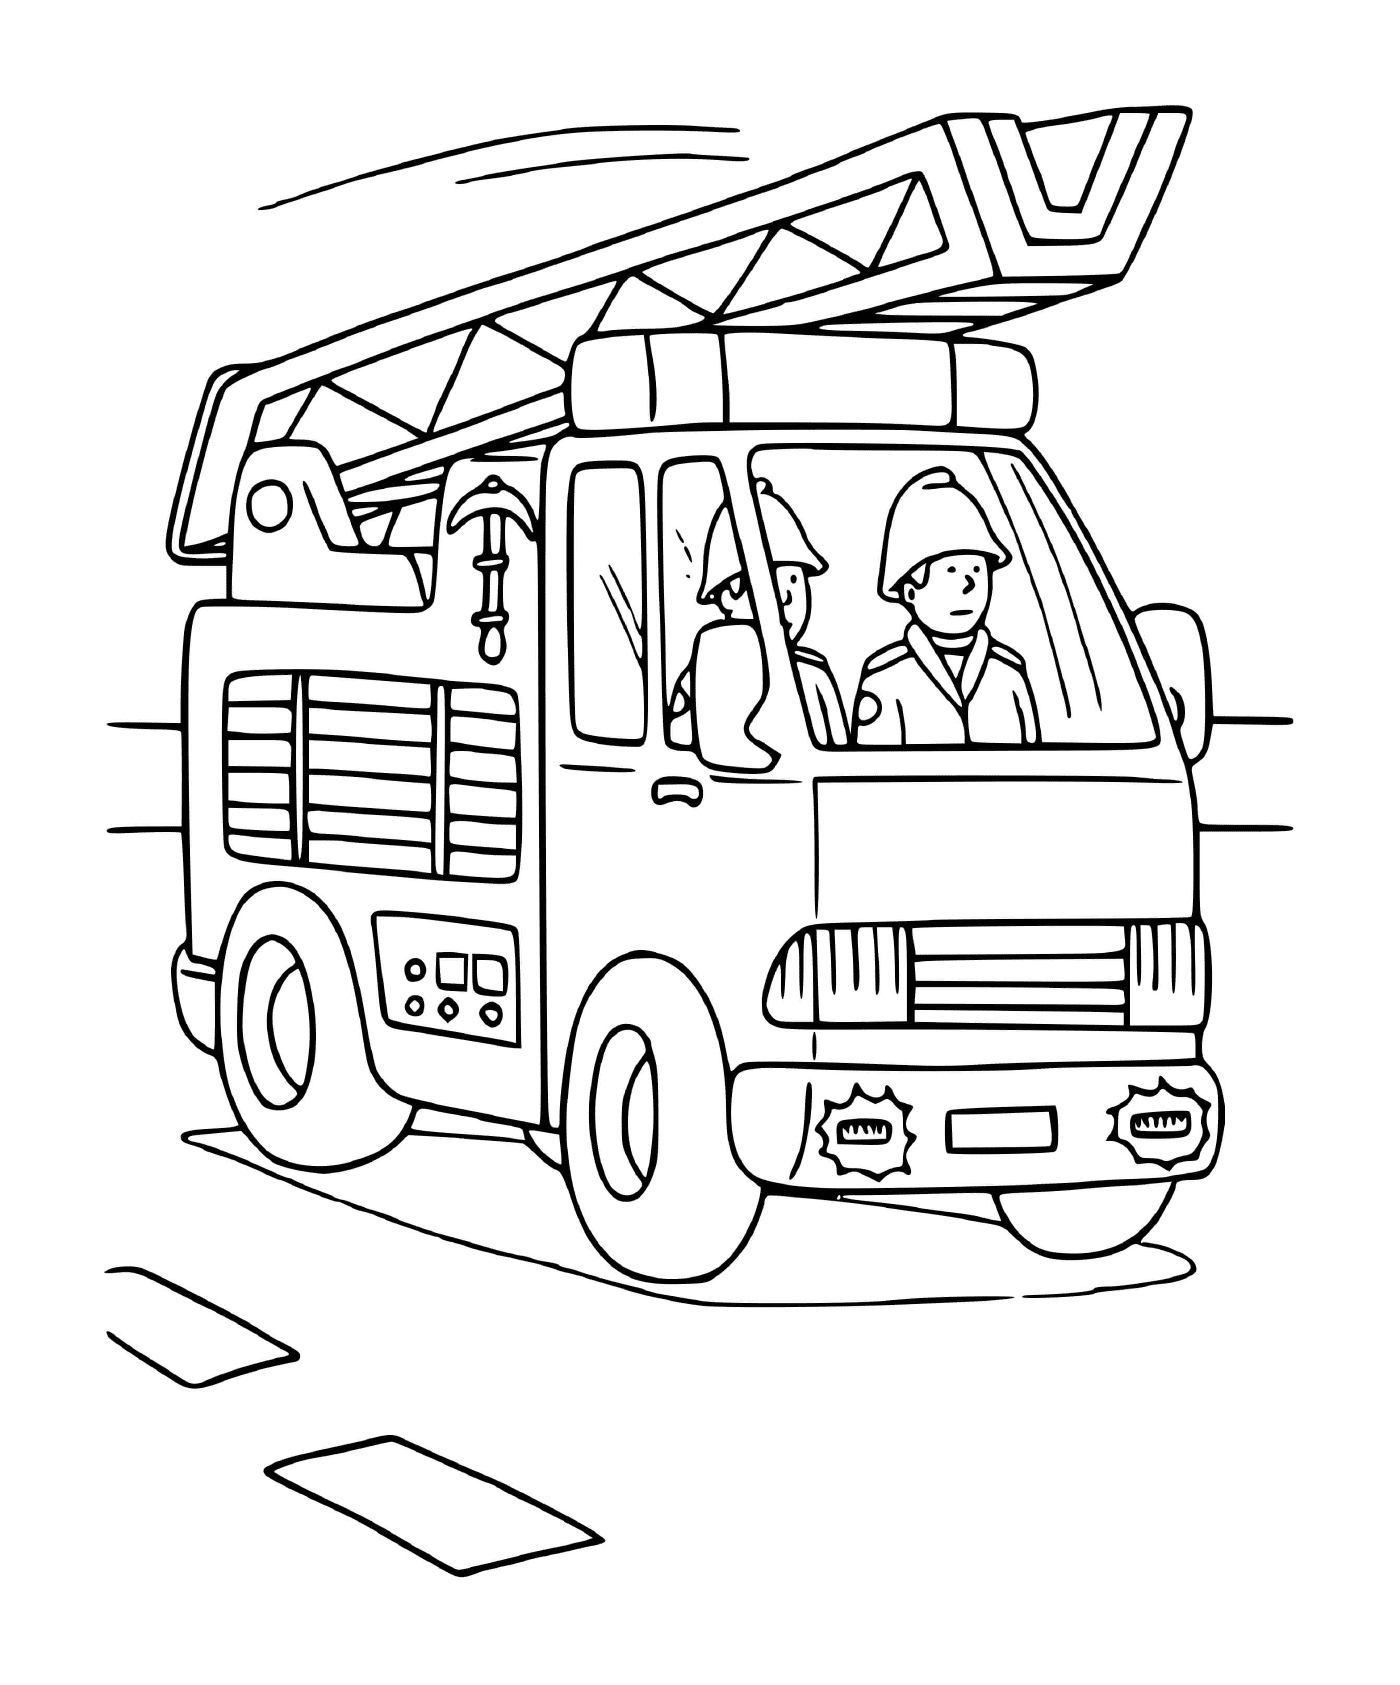  सीढ़ी से आग का ट्रक 